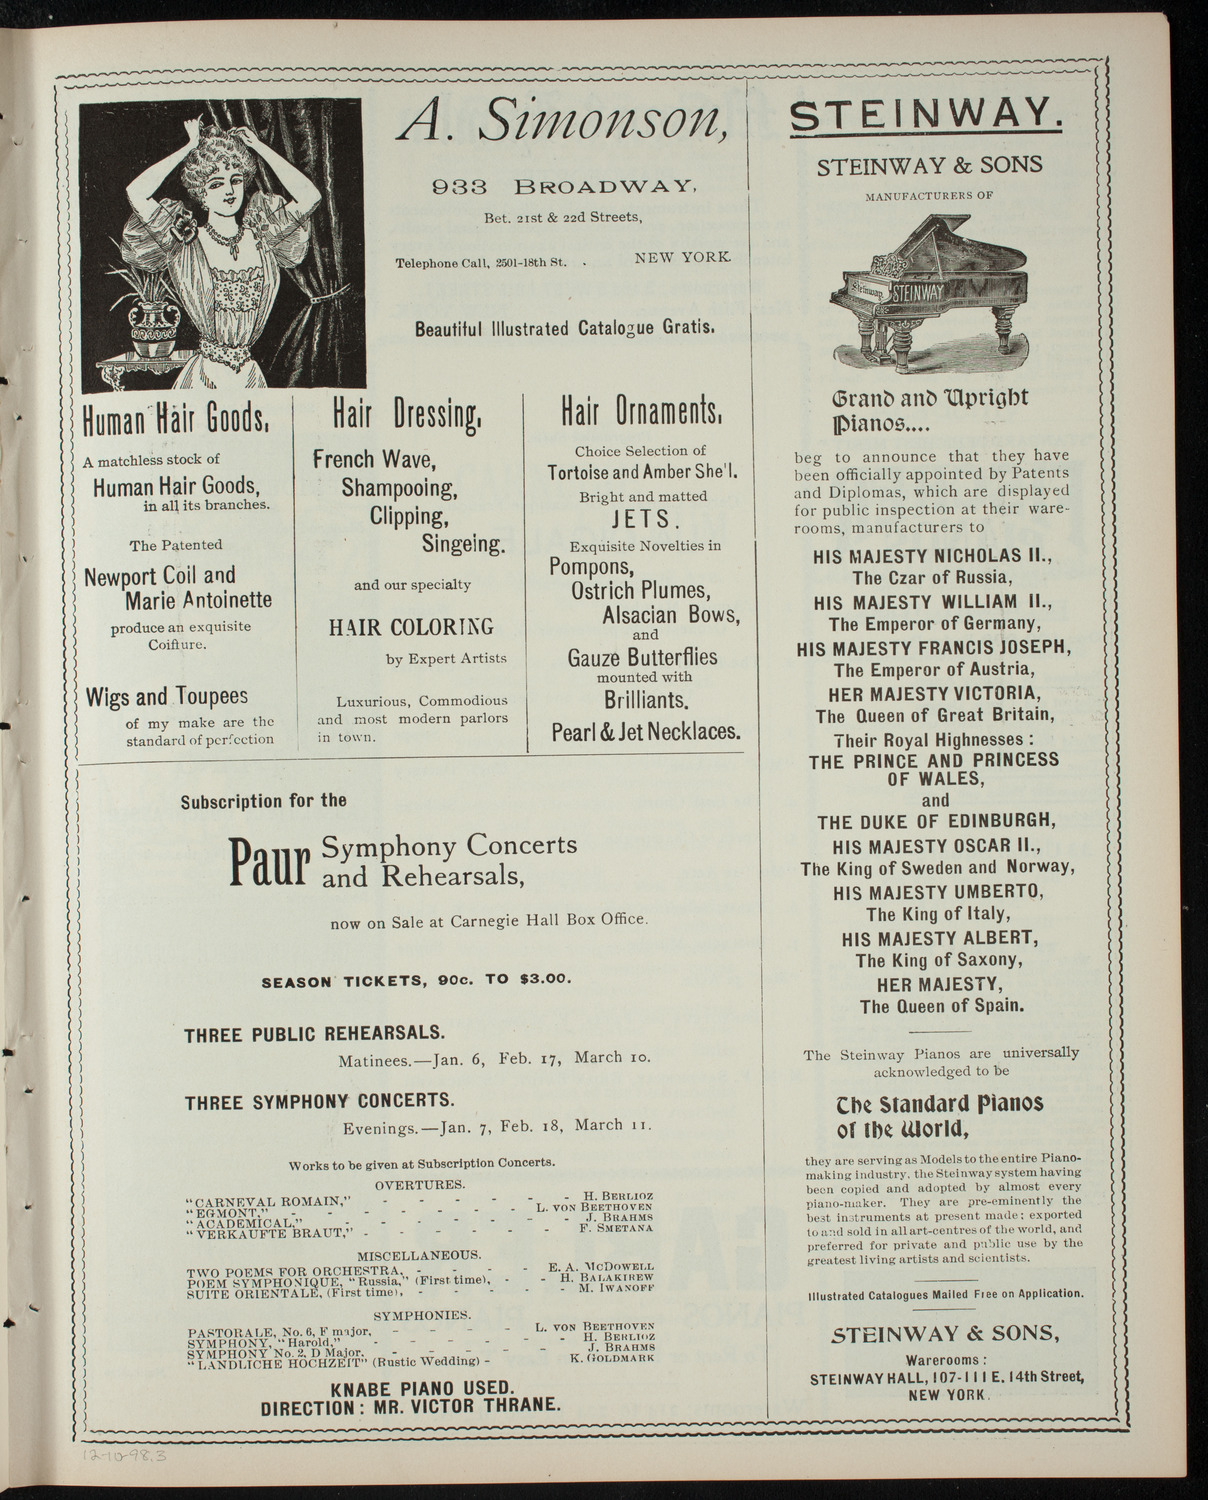 Cercle Choral et Dramatique Francais "La Cigale", December 10, 1898, program page 5